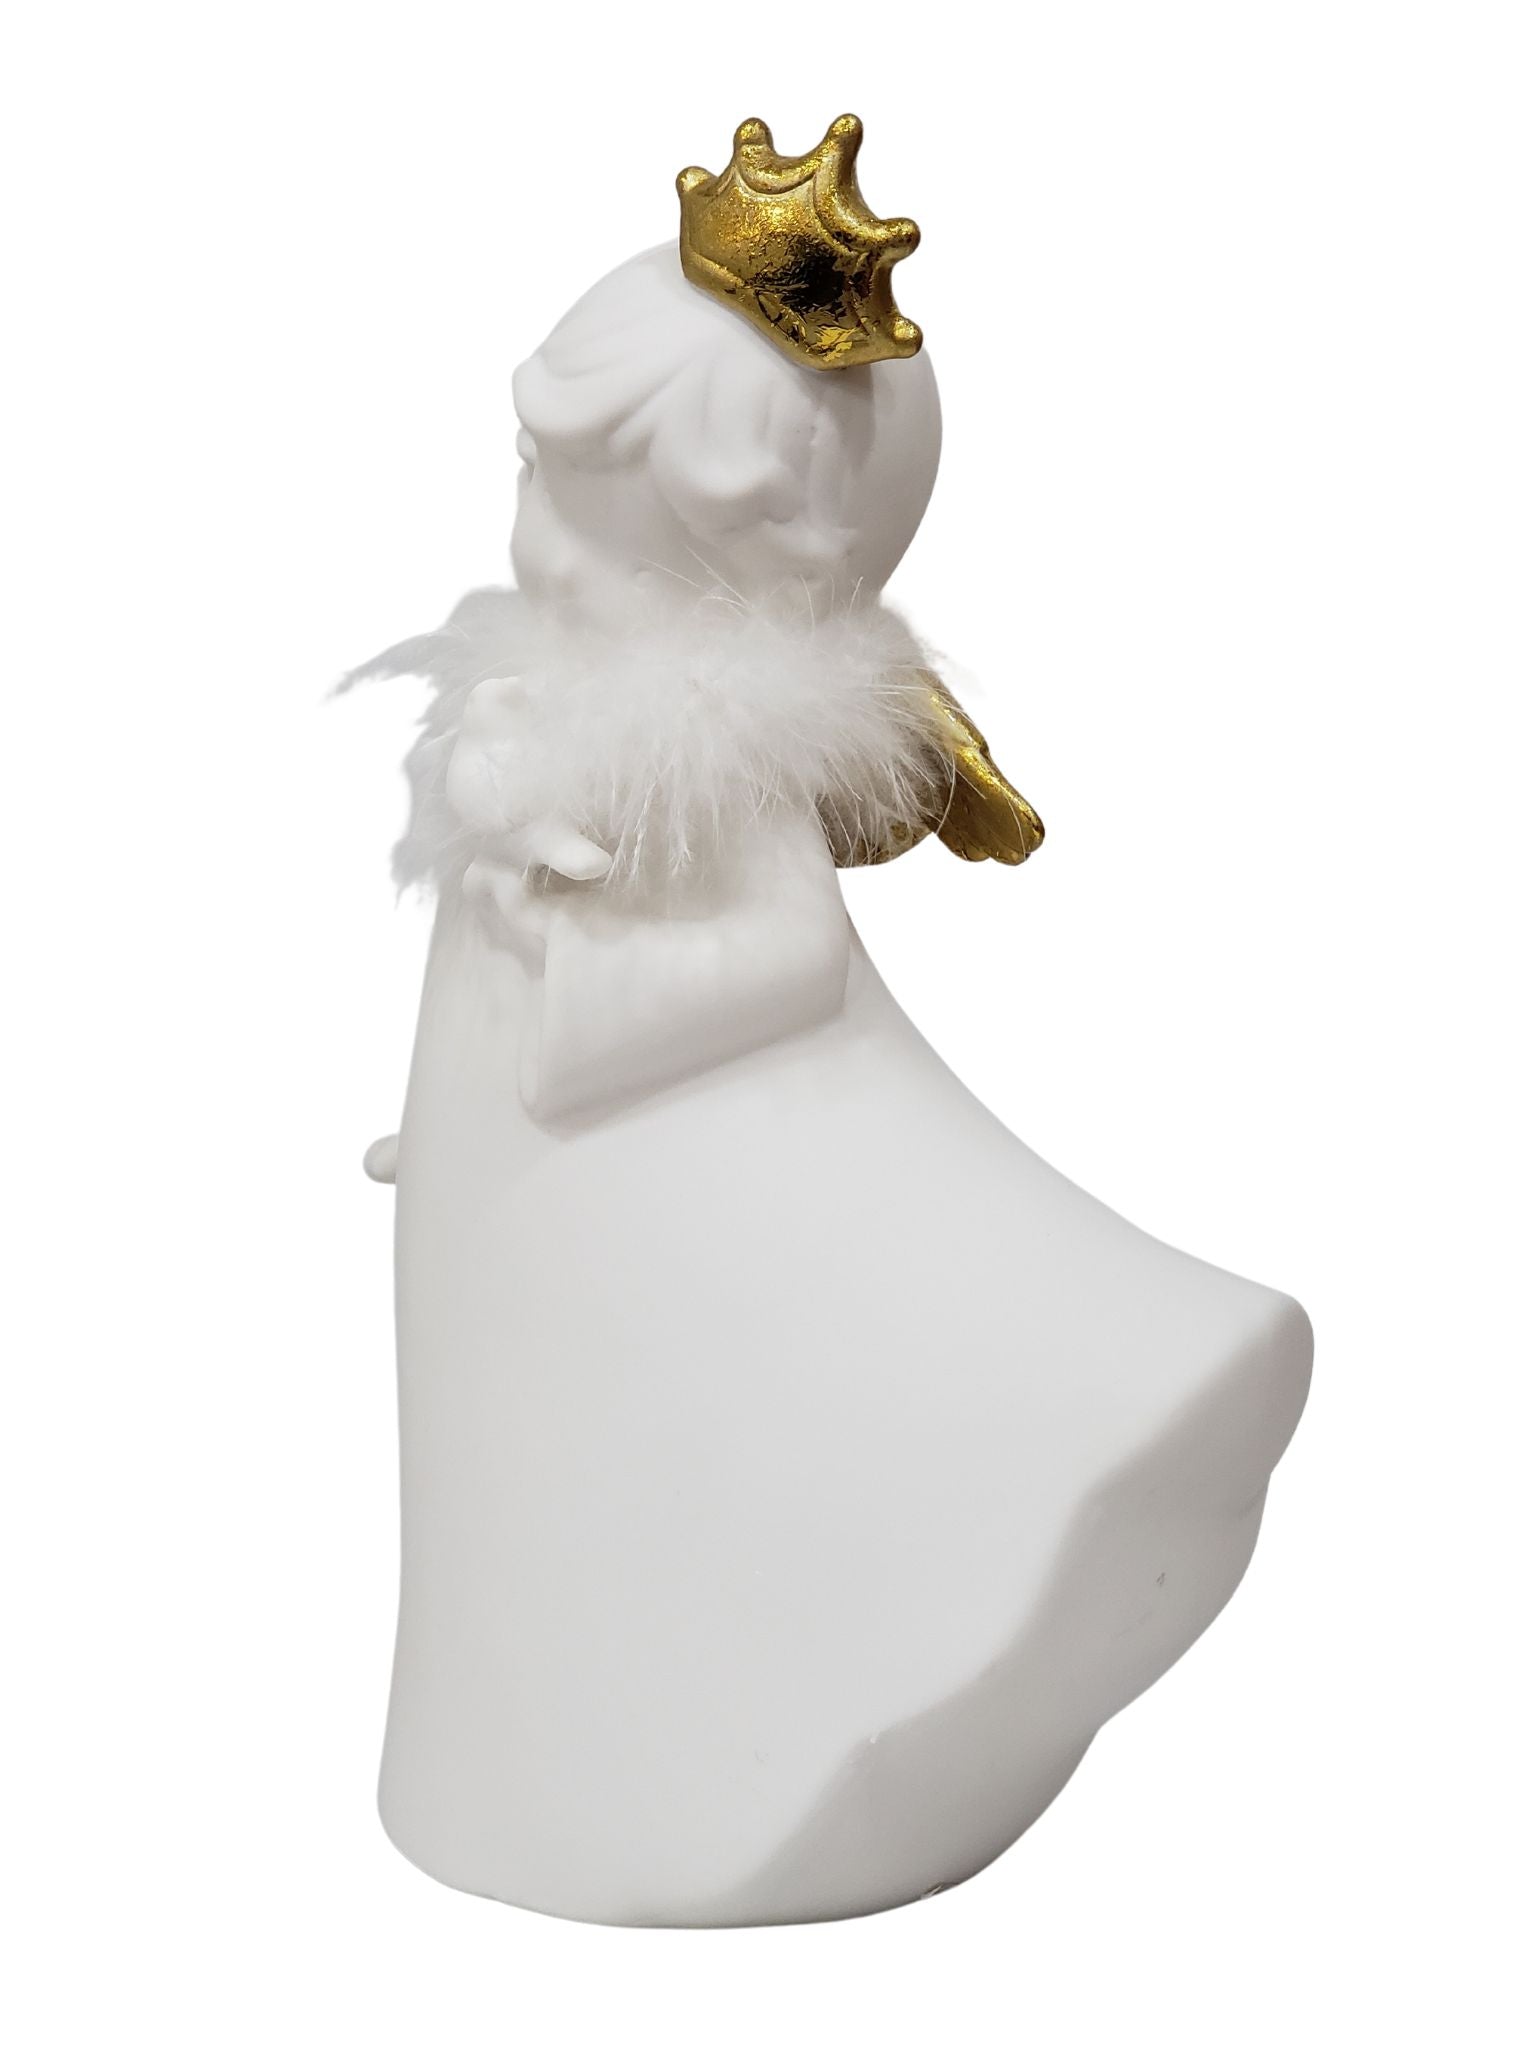 Anjo em Cerâmica com Pássaro-TerraCotta Arte Sacra